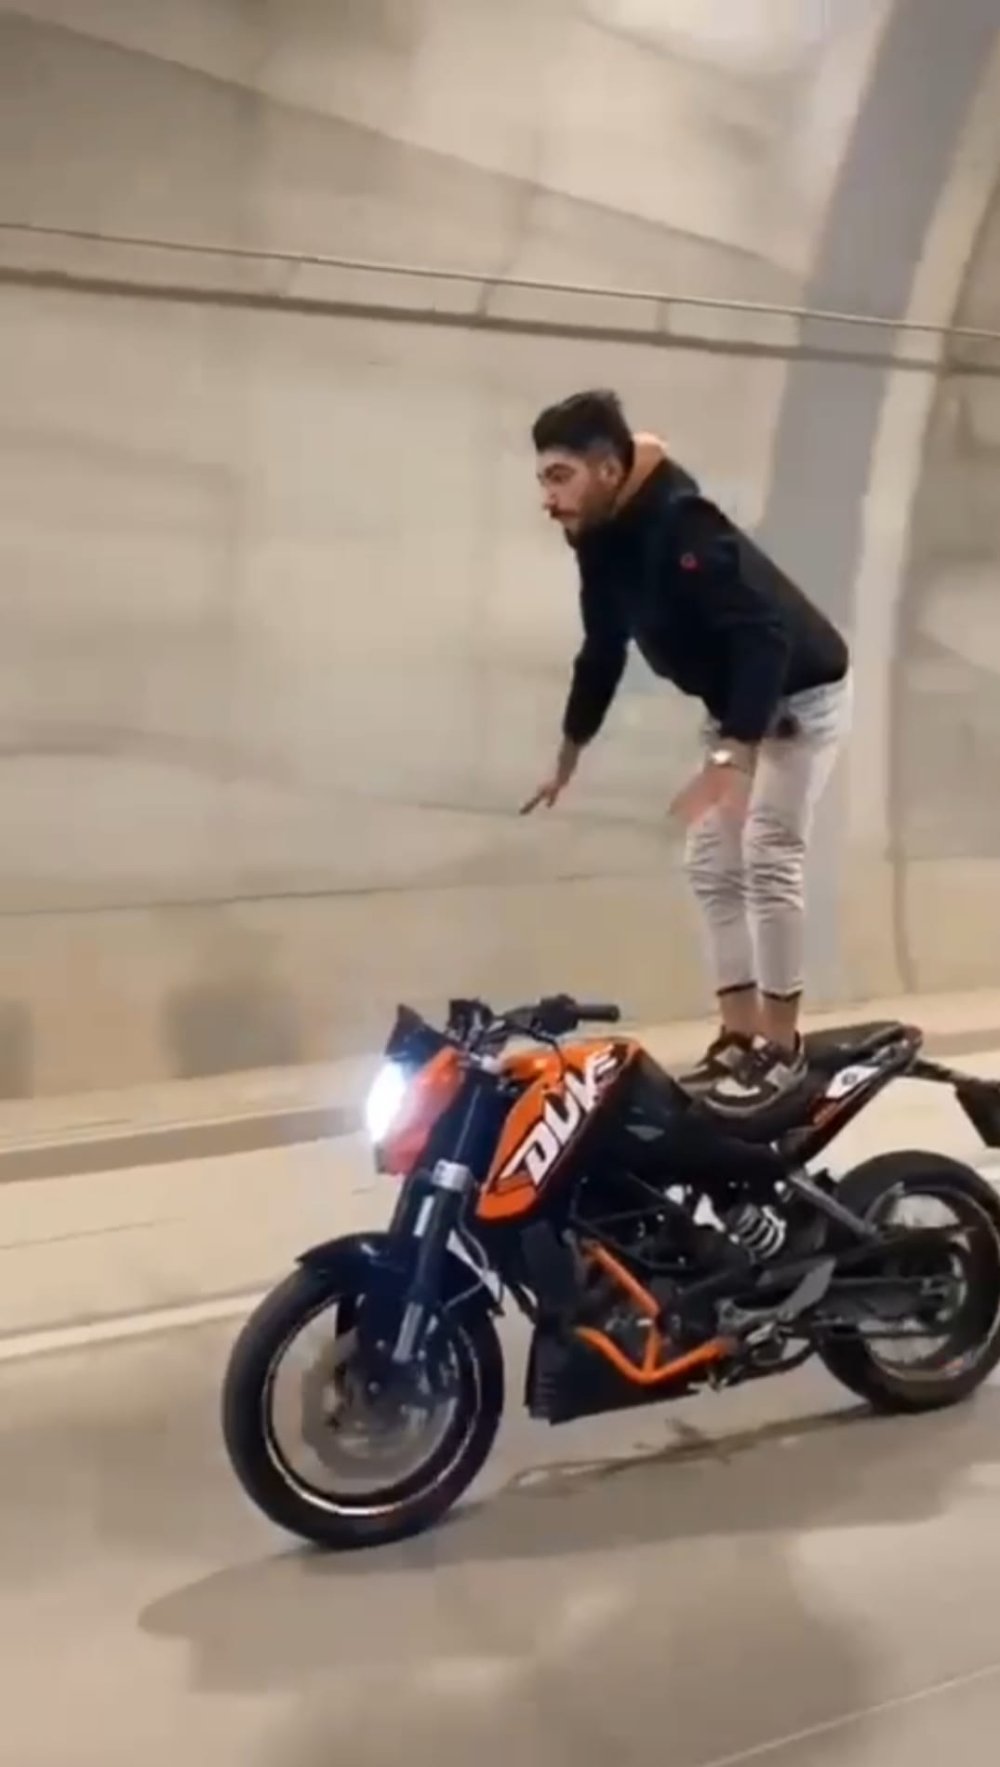 Tünelde akrobatik hareketler yapan motorcuya ceza!